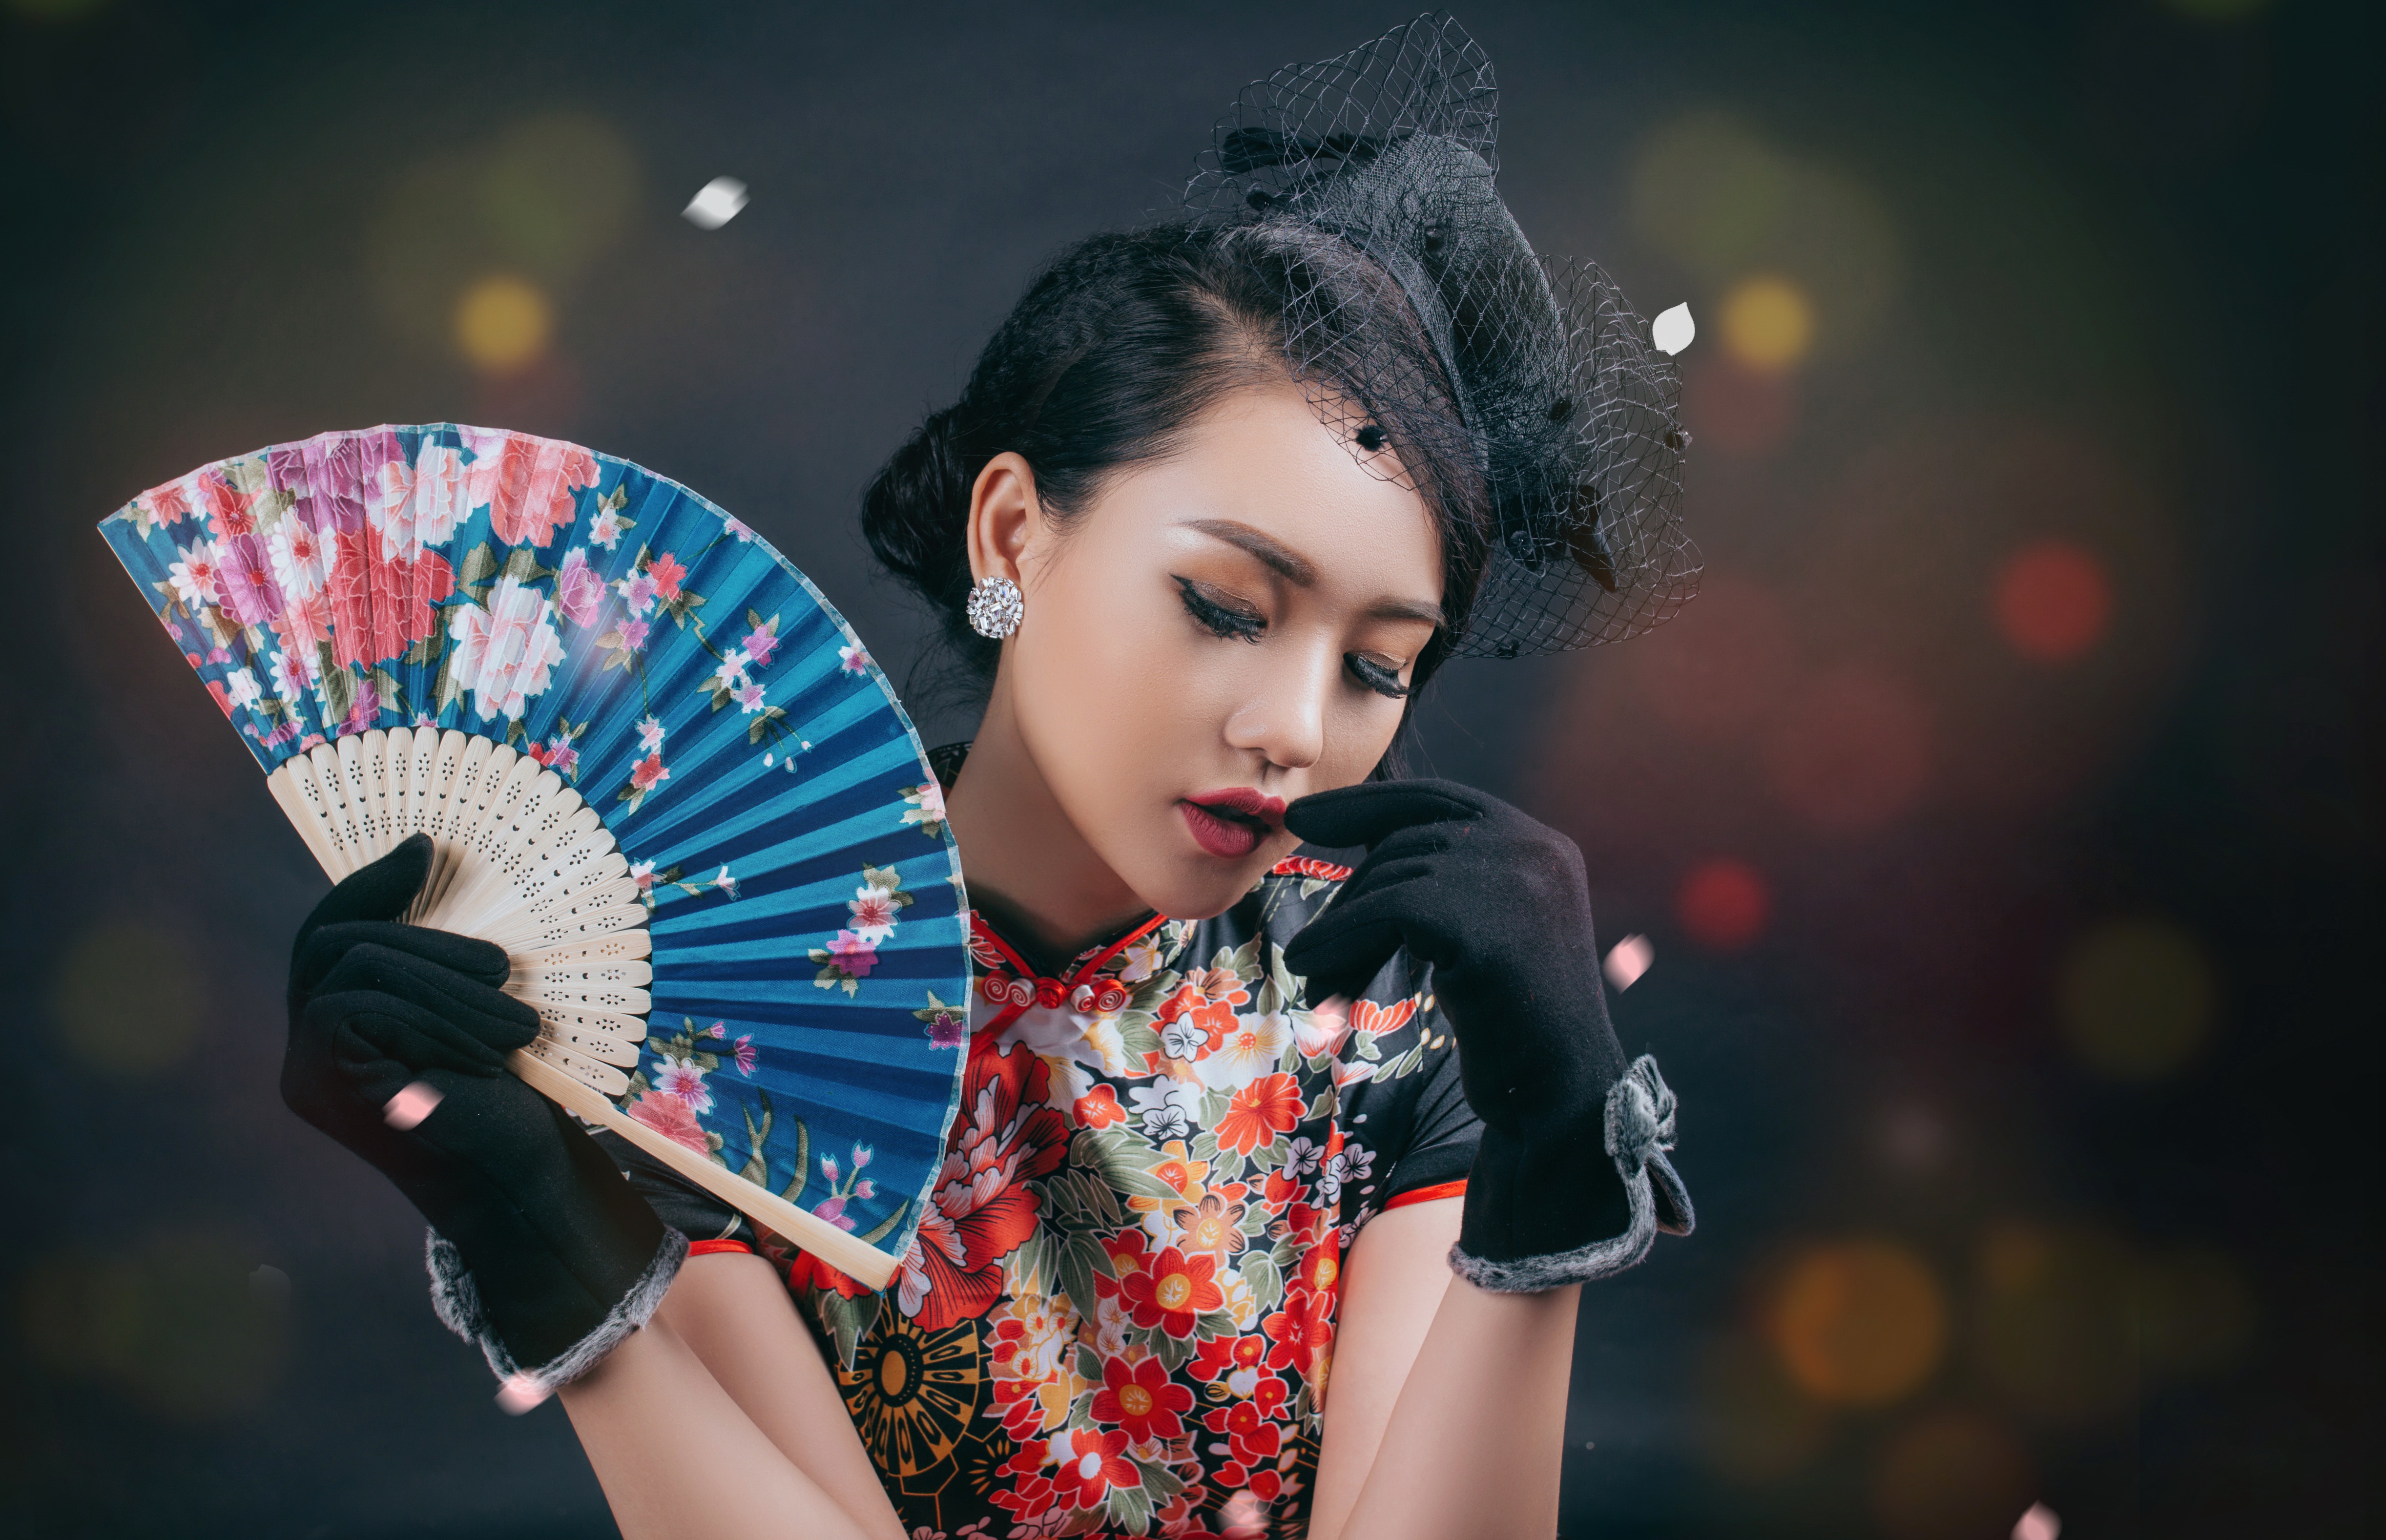 Free download wallpaper Glove, Brunette, Model, Fan, Women, Asian, Lipstick on your PC desktop